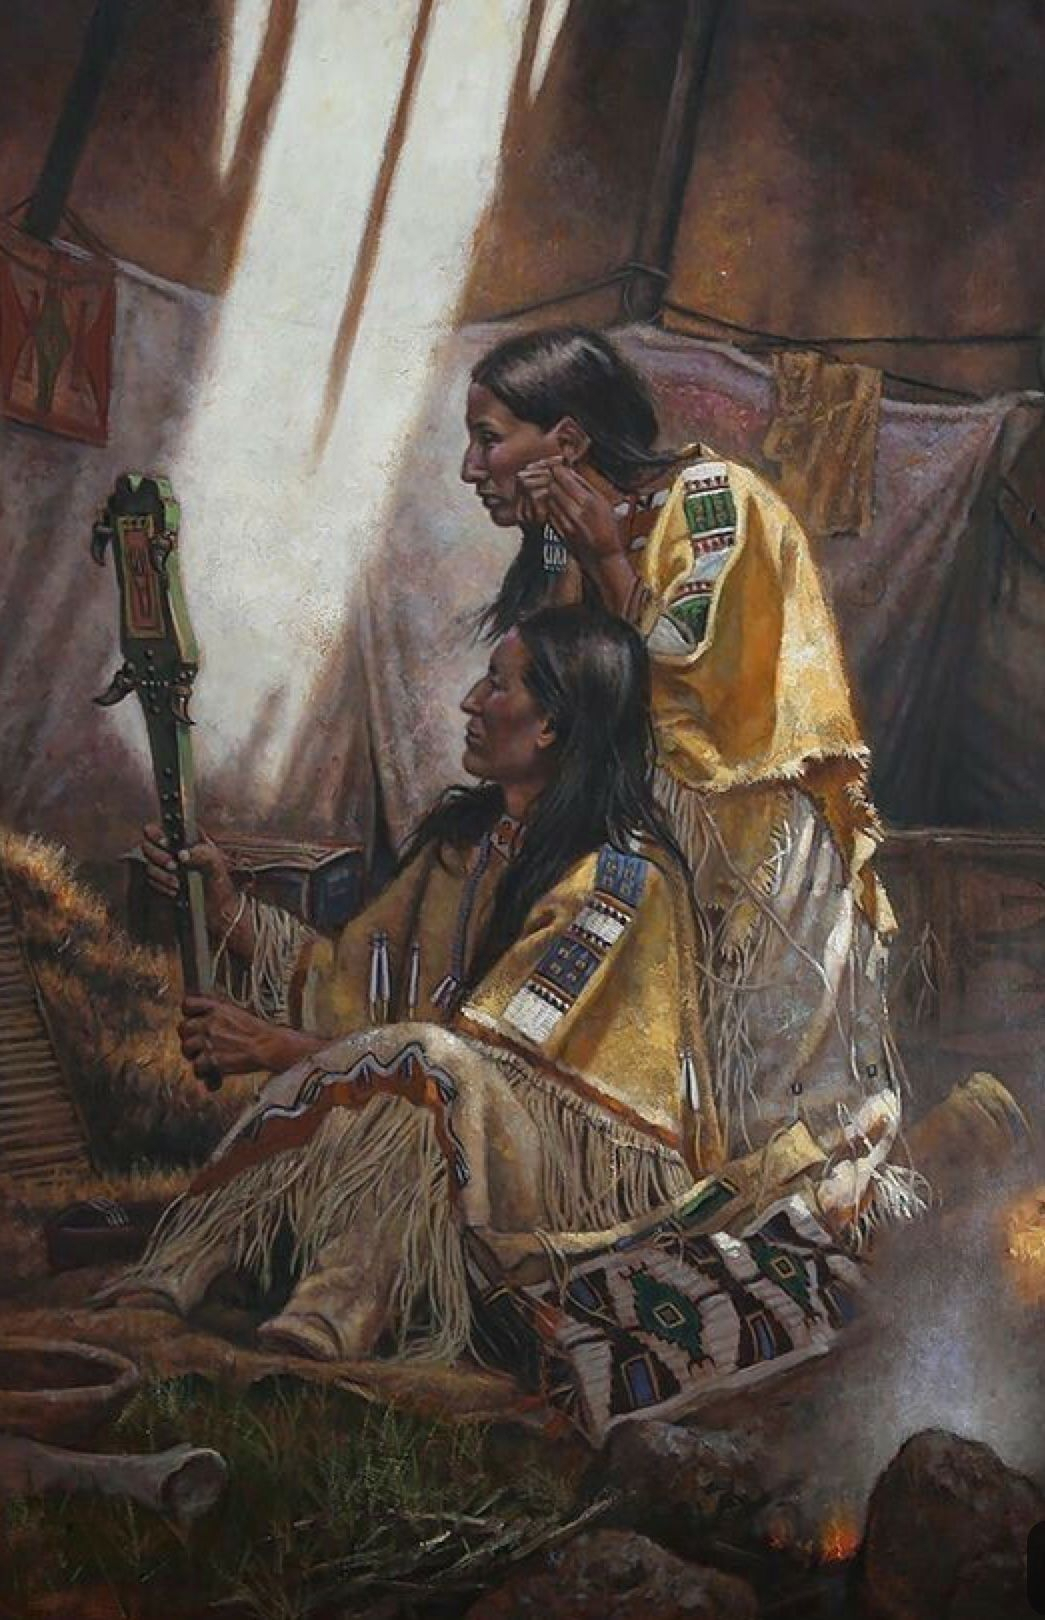 Amerindiens | Histoire Des Indiens D'Amérique, Amerindien destiné Indiens D Amériques